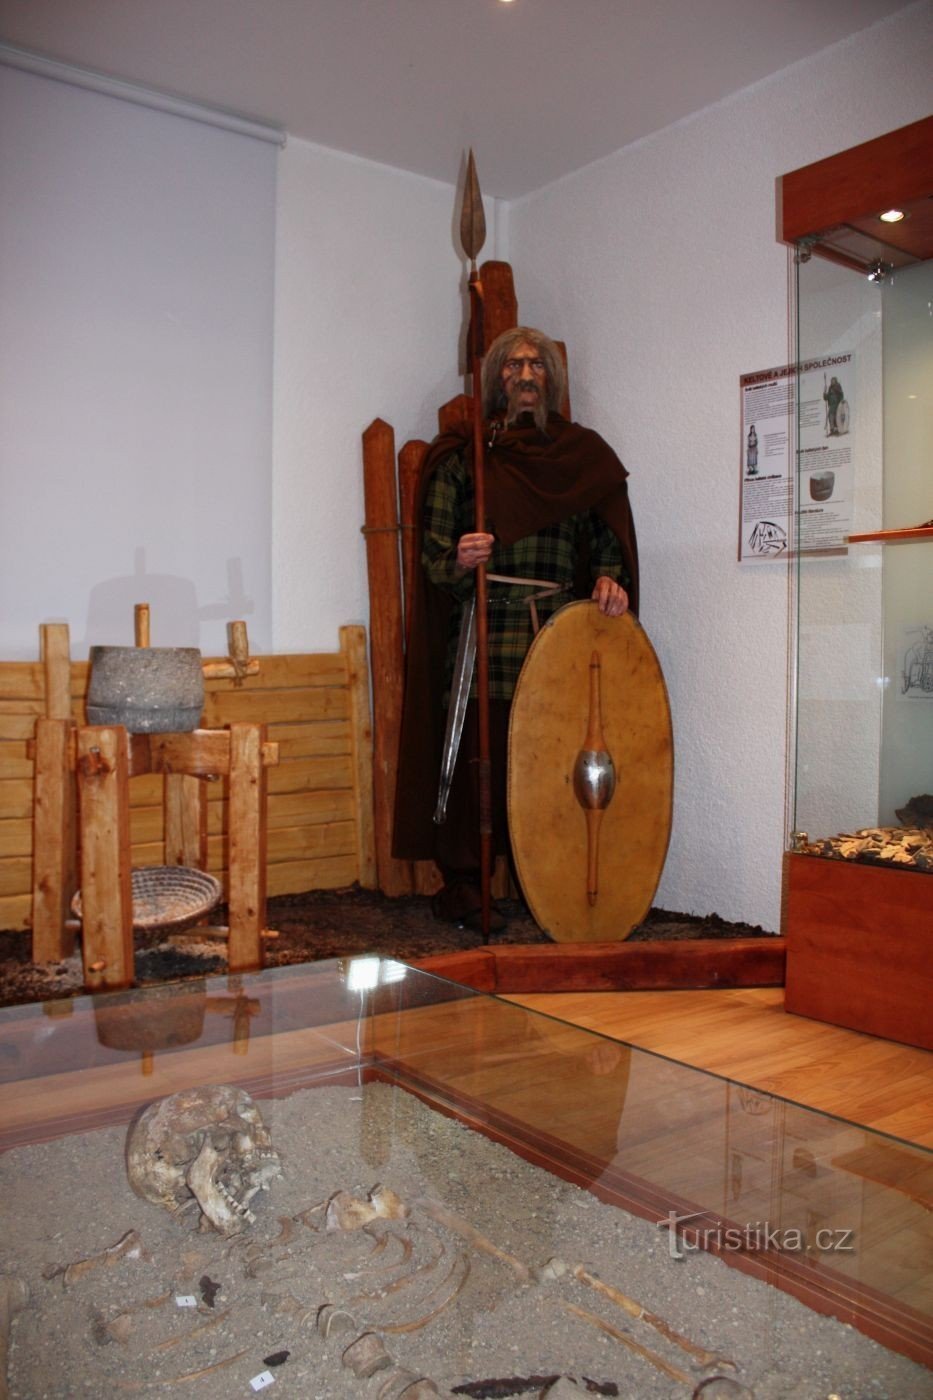 Keltenmuseum in Dobšice